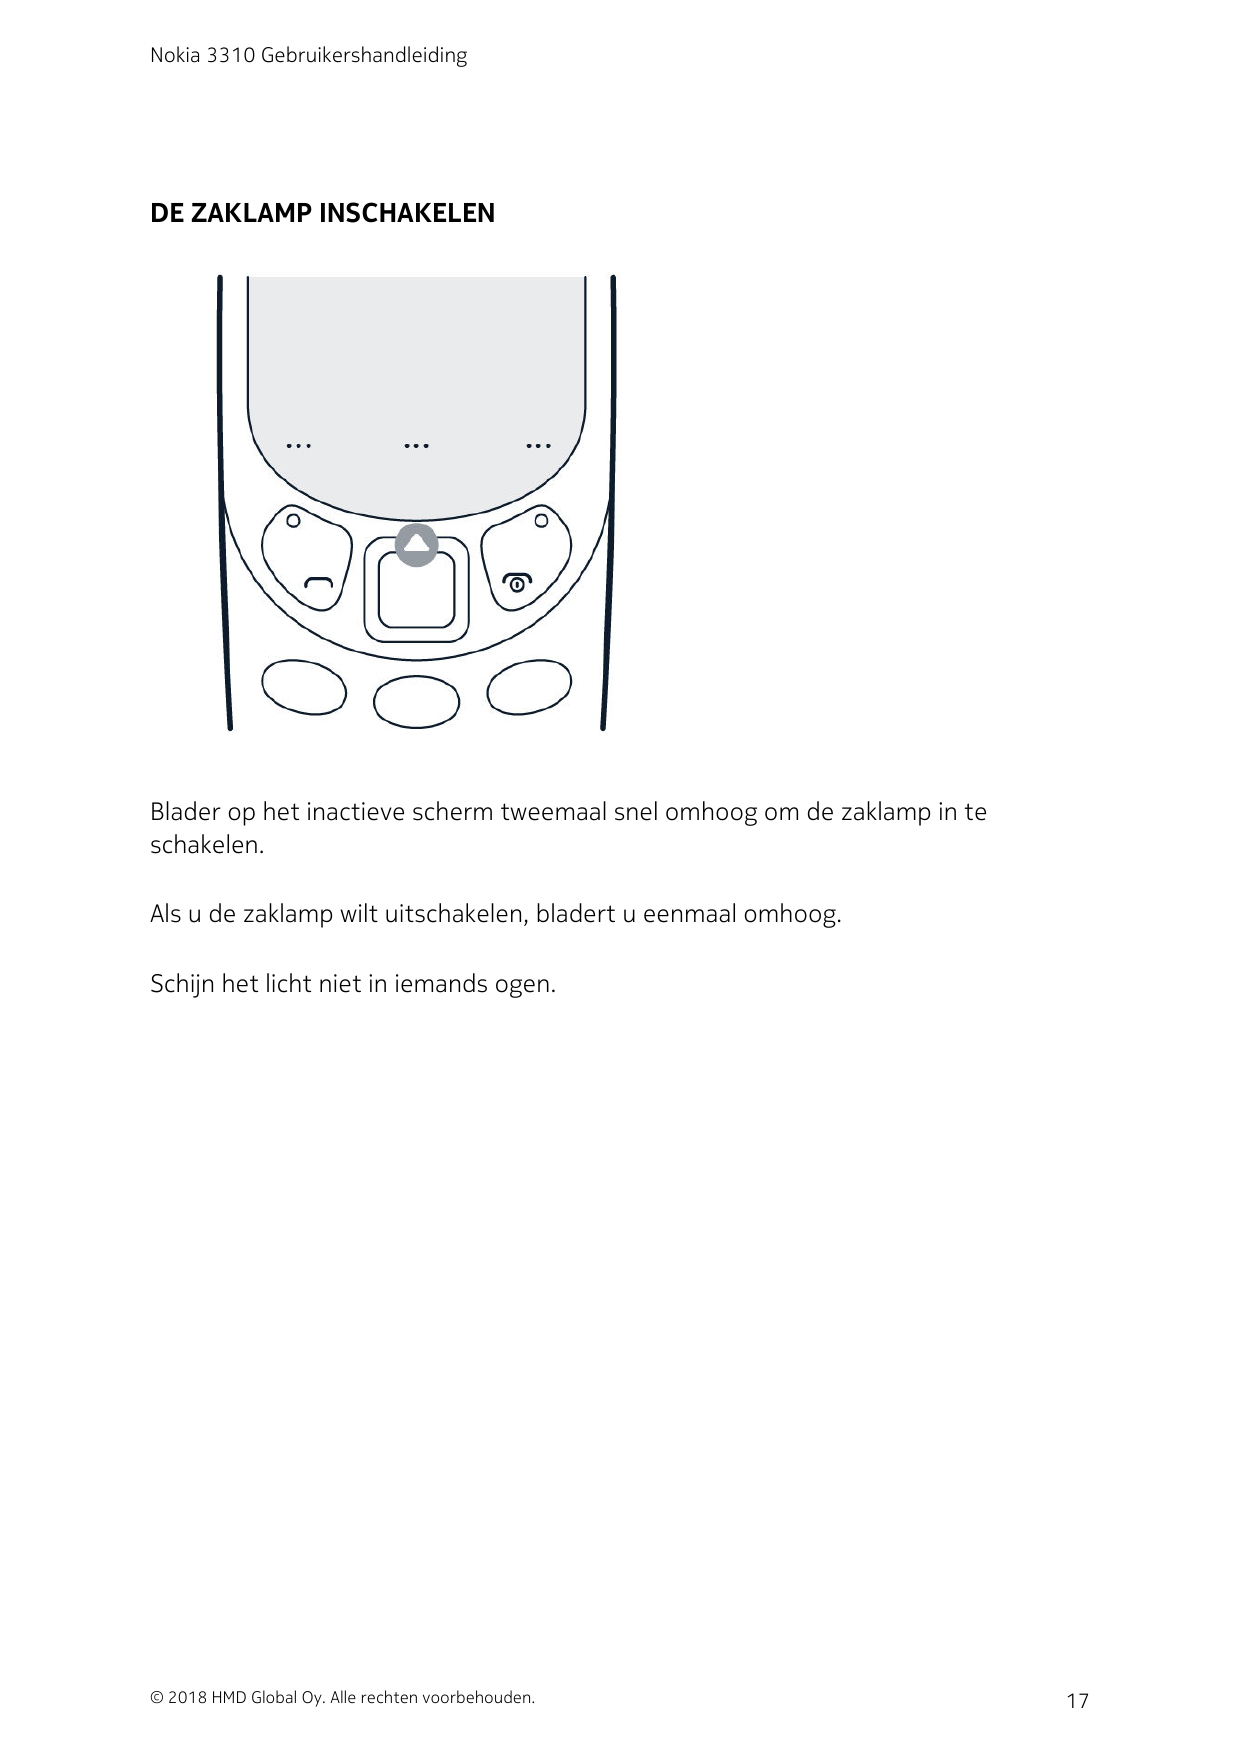 Nokia 3310 GebruikershandleidingDE ZAKLAMP INSCHAKELENBlader op het inactieve scherm tweemaal snel omhoog om de zaklamp in tesch